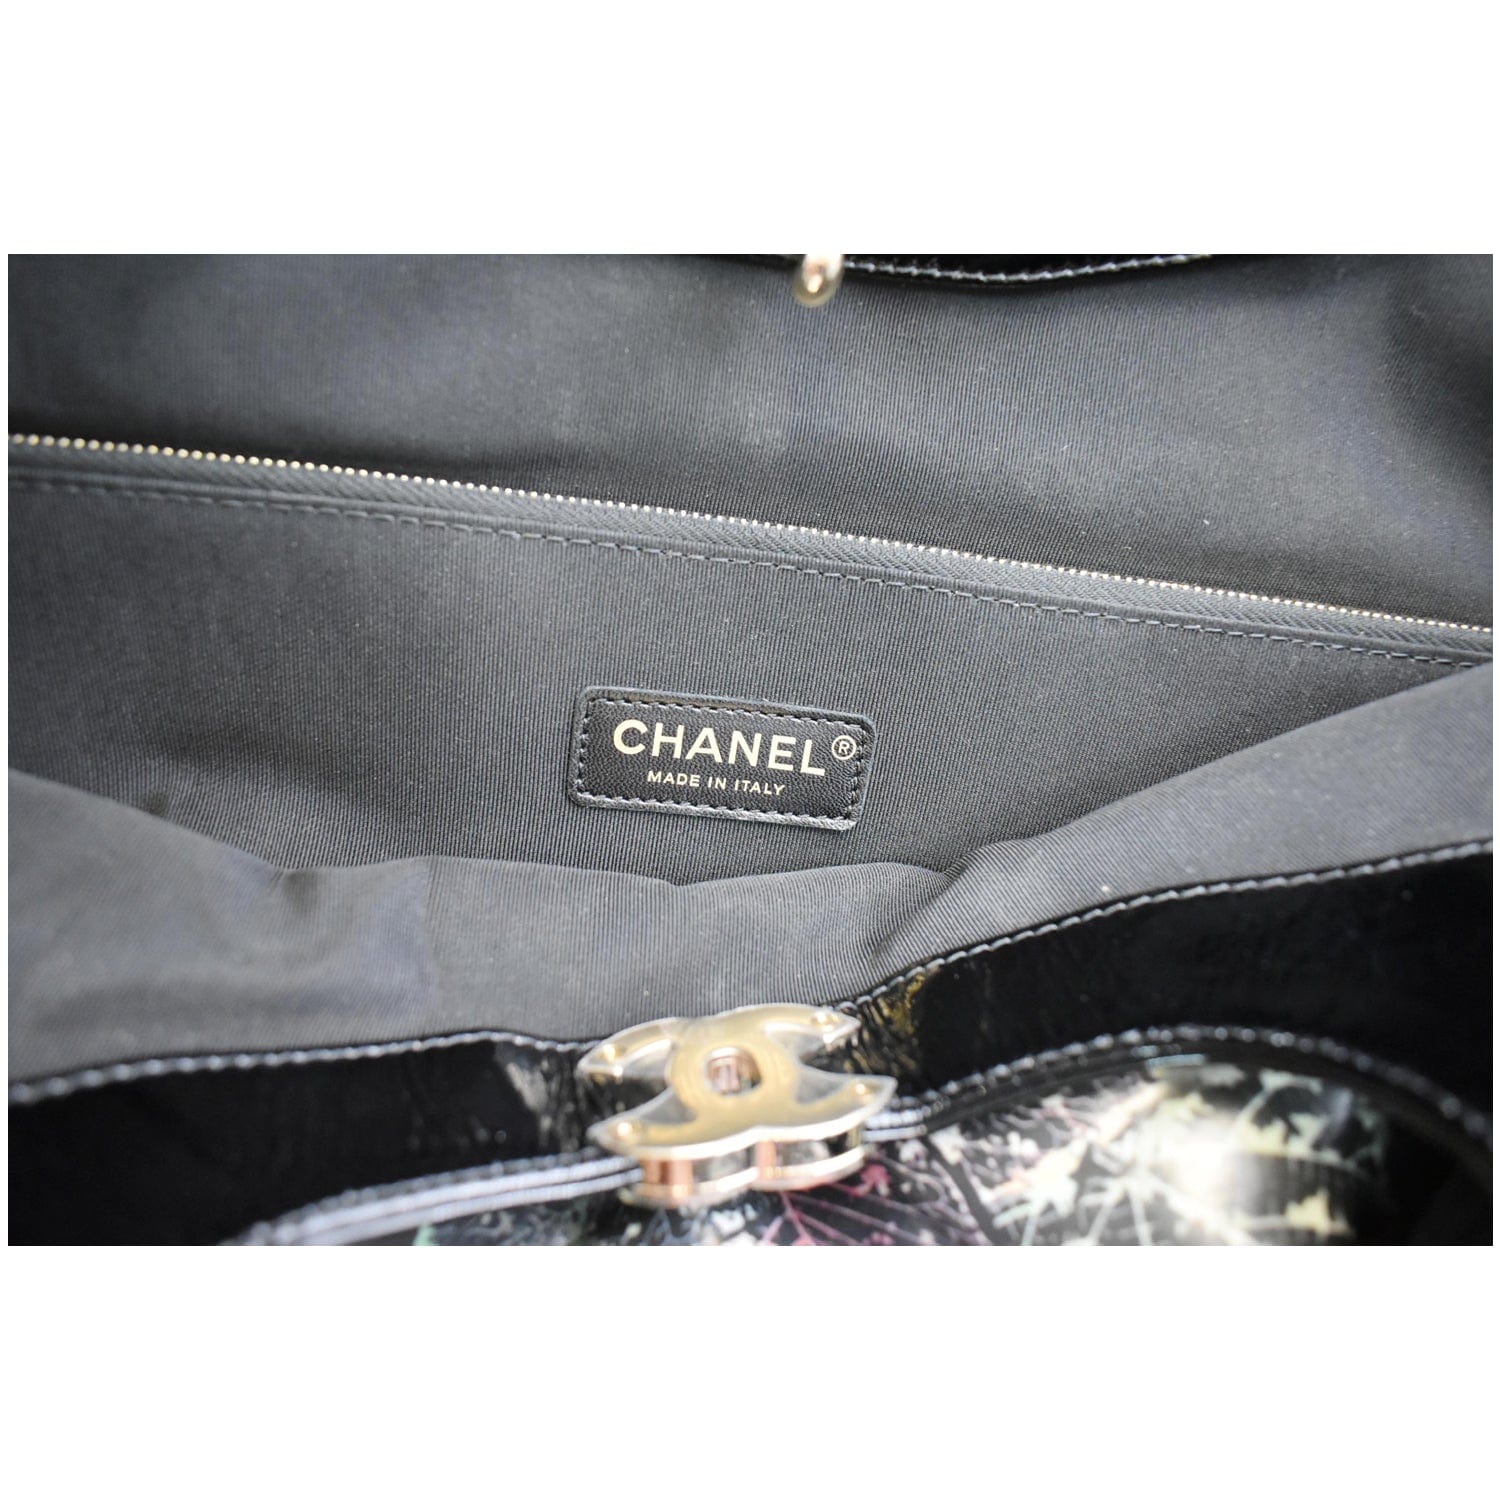 CHANEL 31 Large Leaves Printed Leather Shopping Shoulder Bag Black - 1